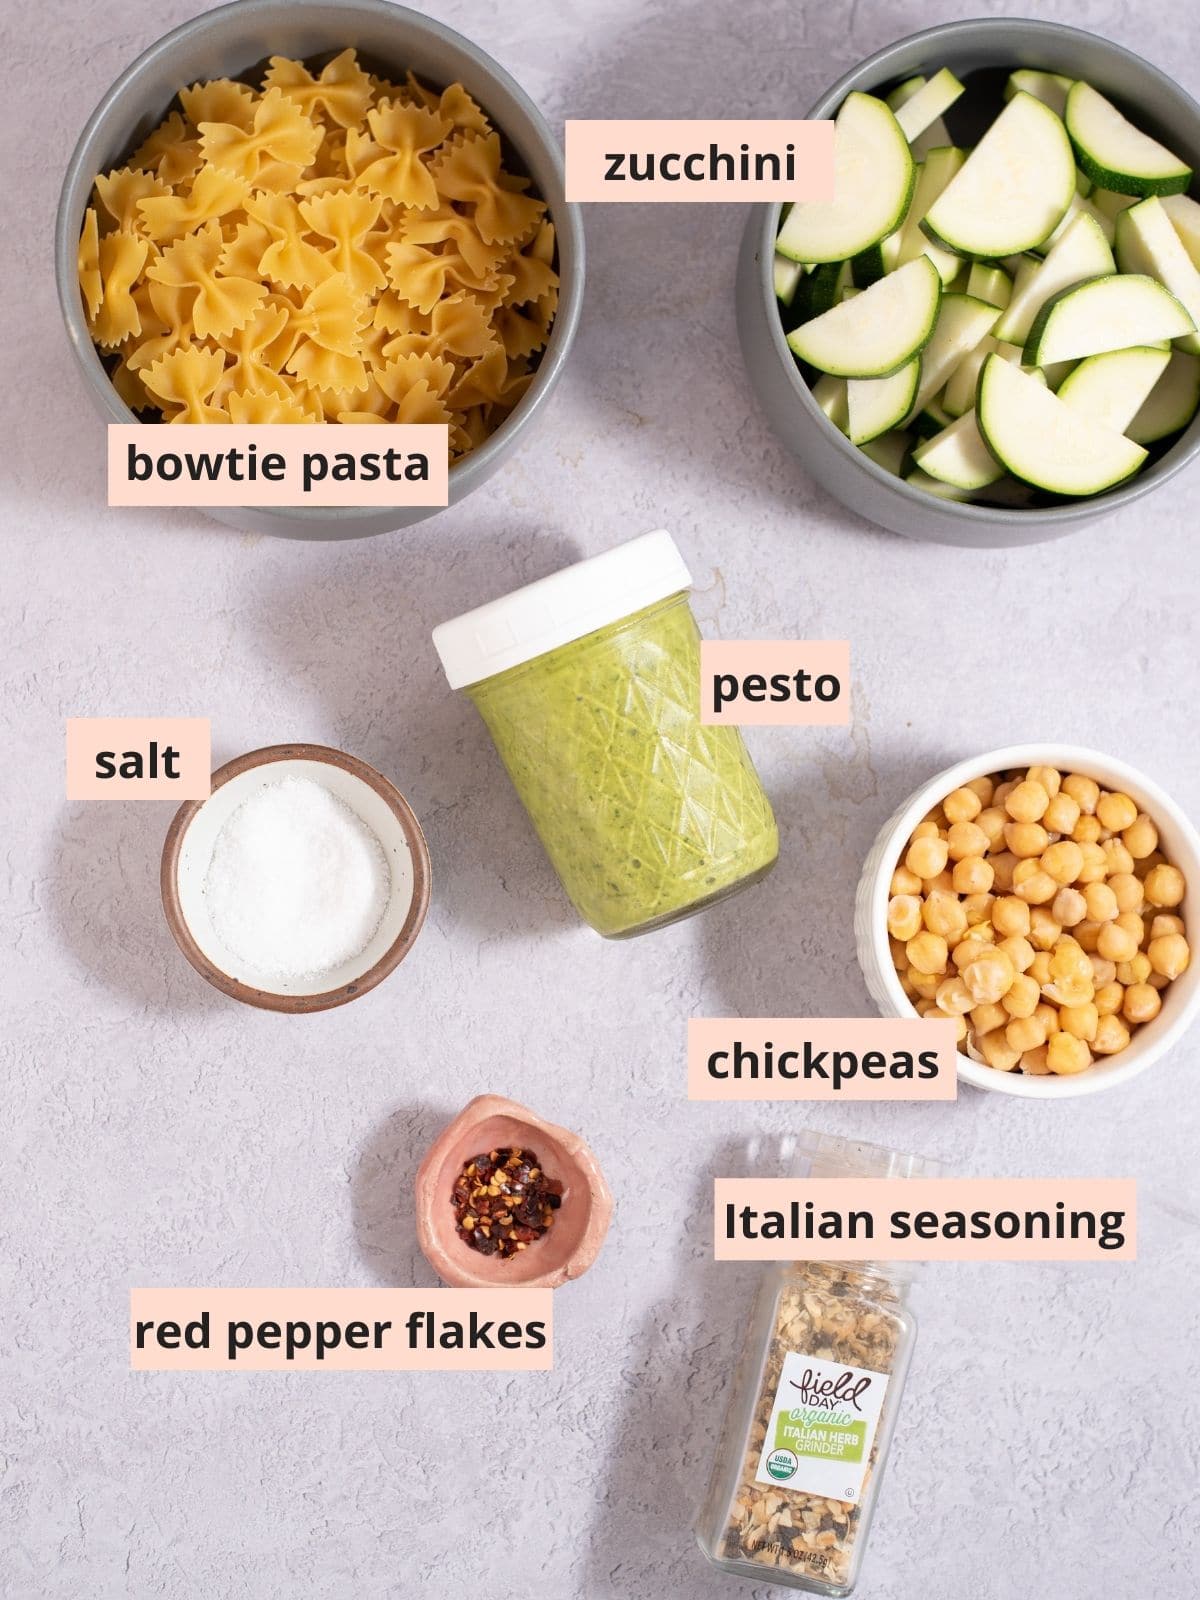 Labeled ingredients used to make pesto pasta.